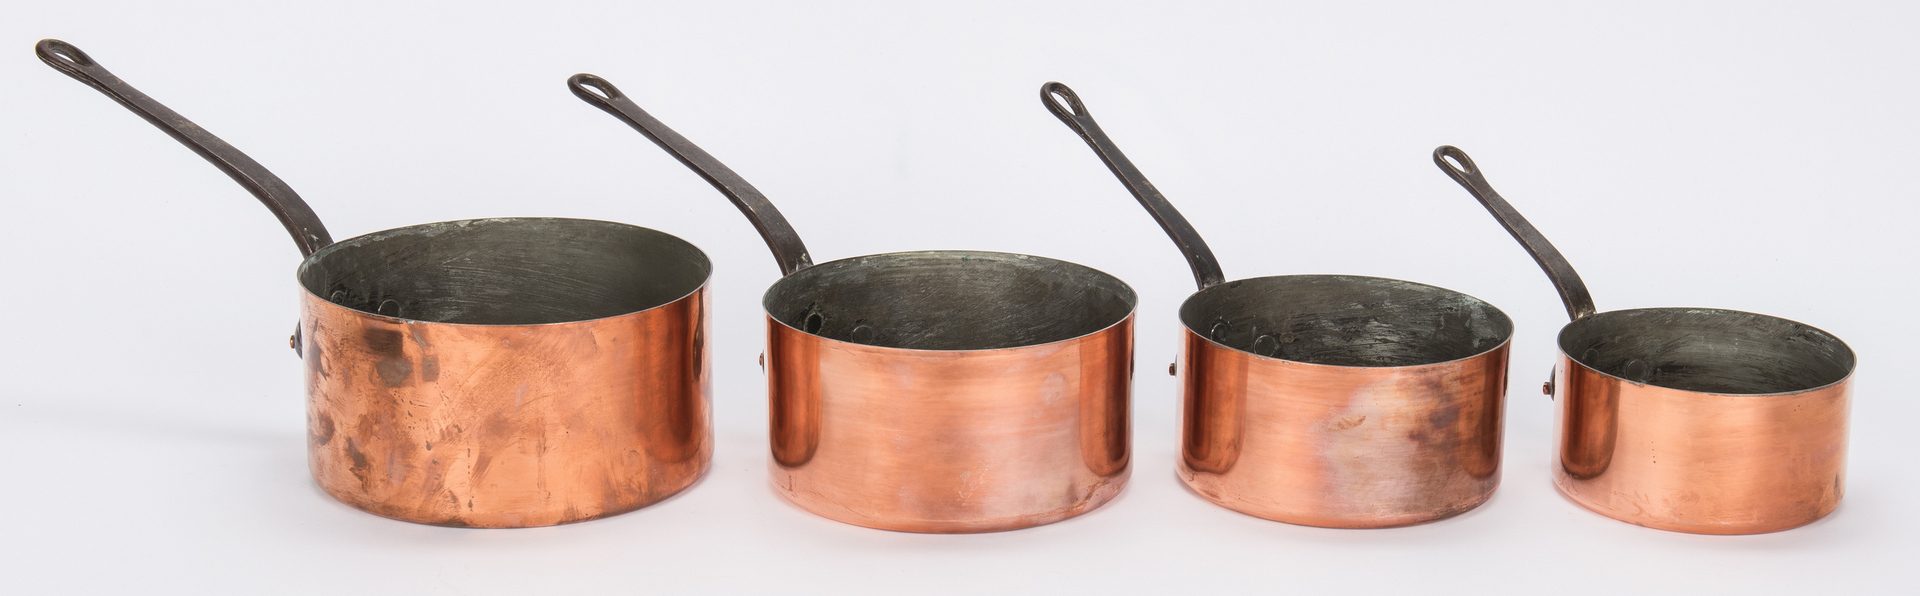 Lot 344: 7 Graduated Copper Pots